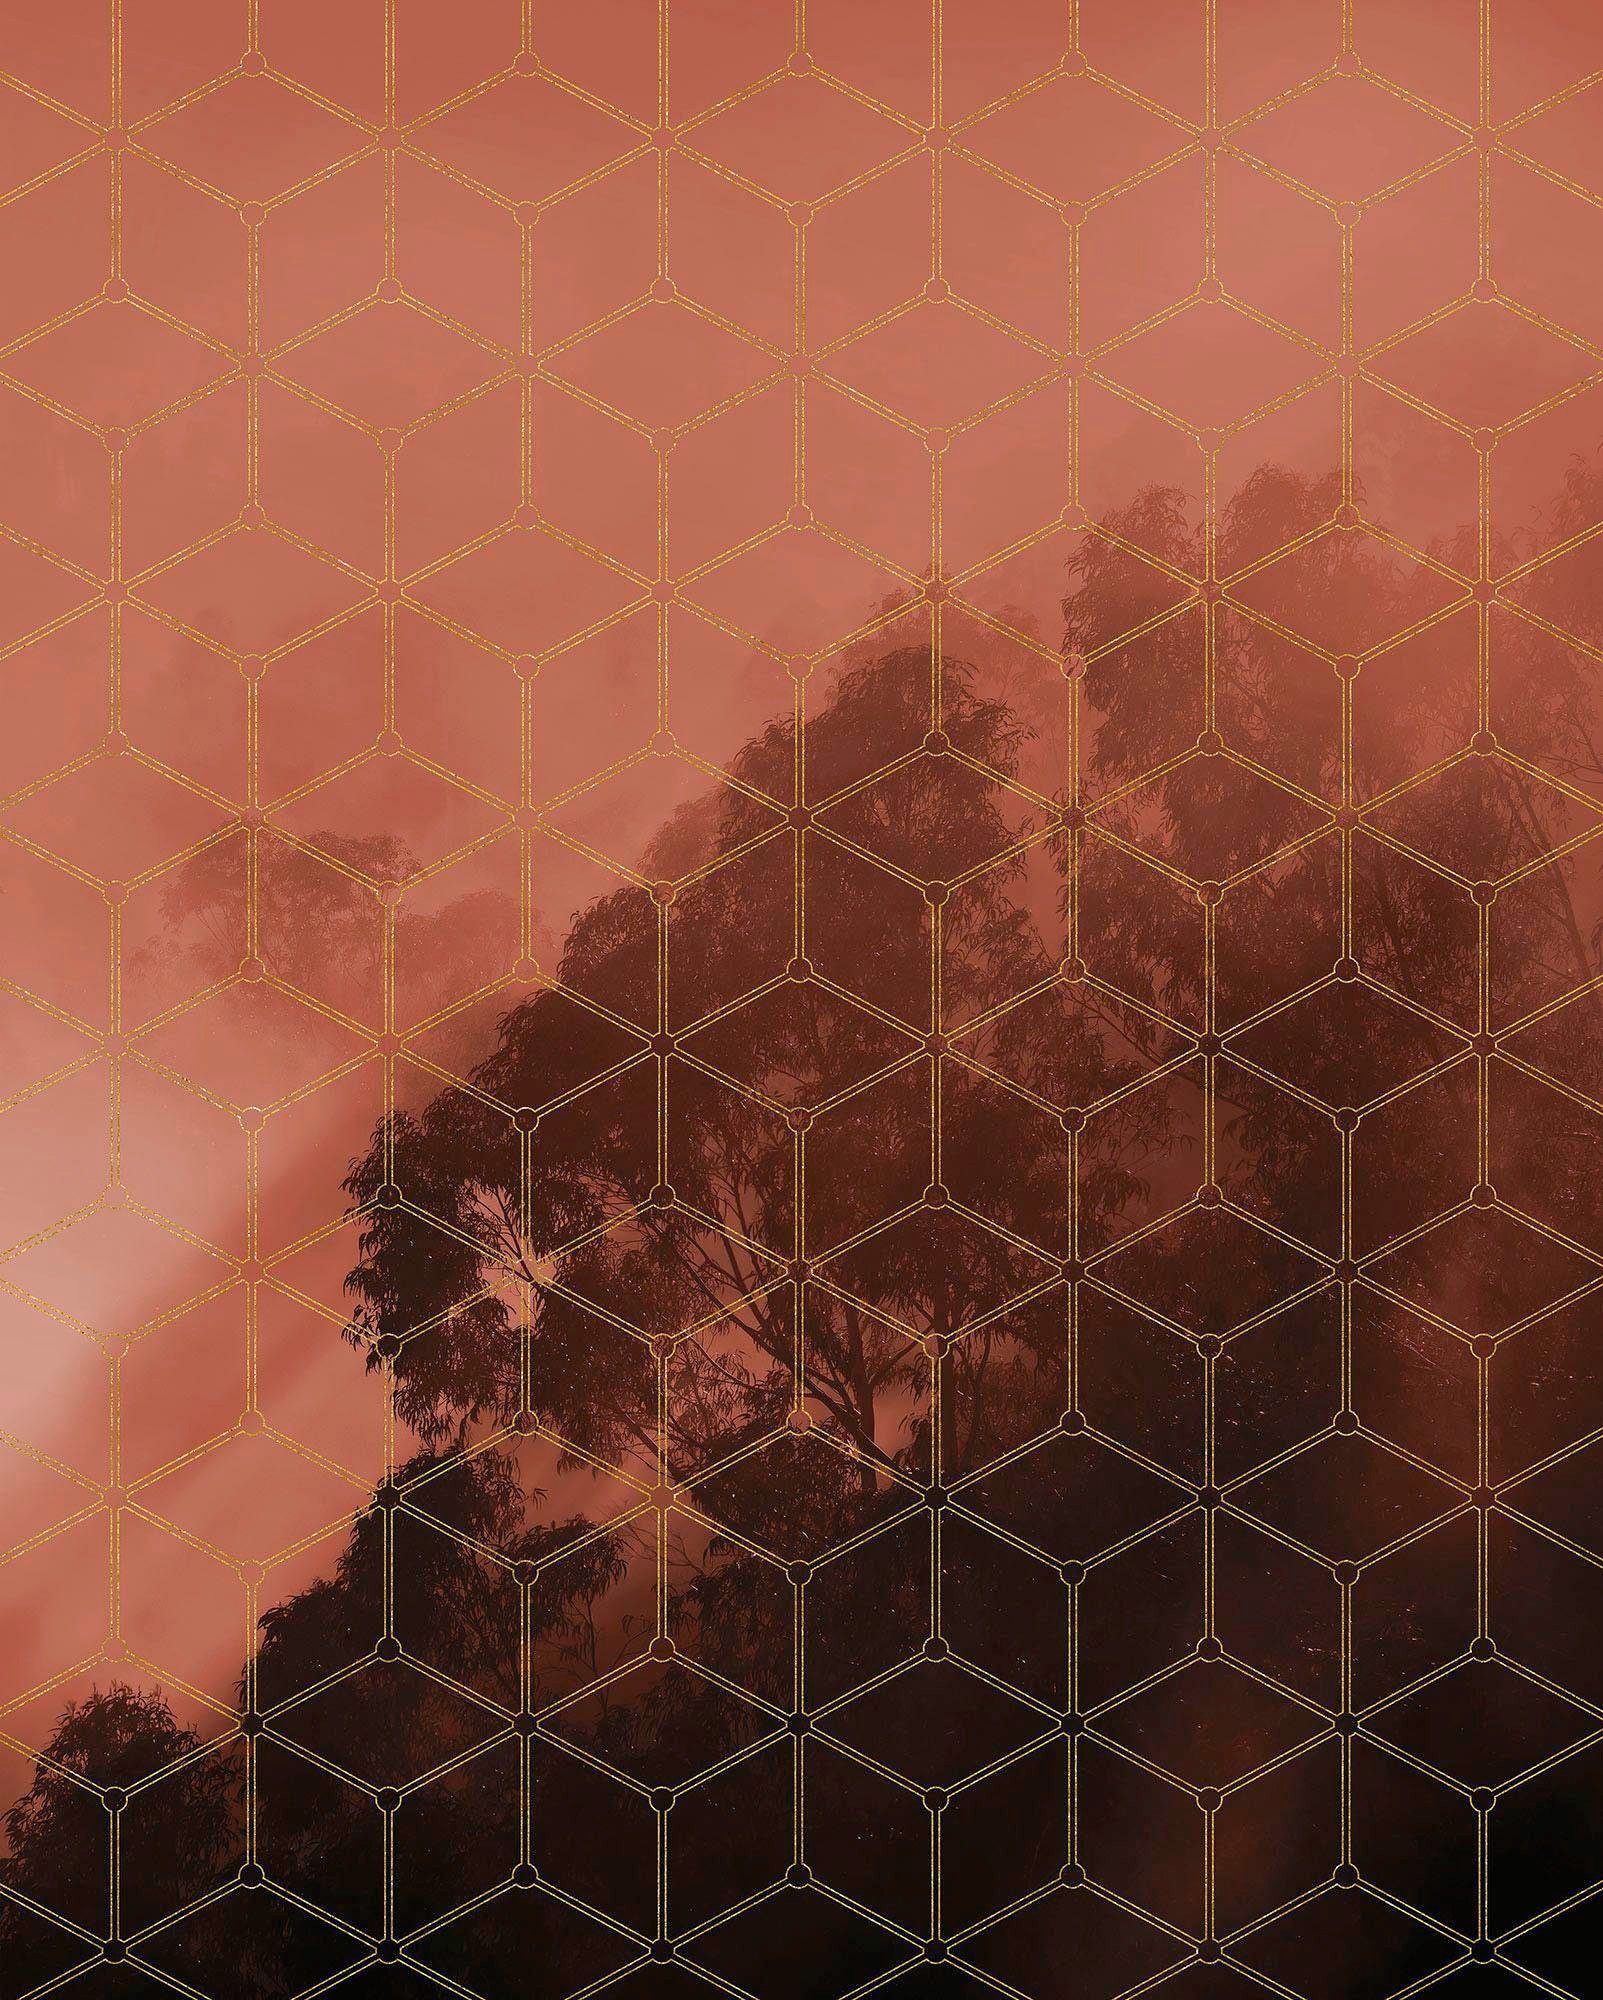 ❤ Komar Vliestapete »Golden Grid«, 200x250 cm (Breite x Höhe), Vliestapete,  100 cm Bahnbreite entdecken im Jelmoli-Online Shop